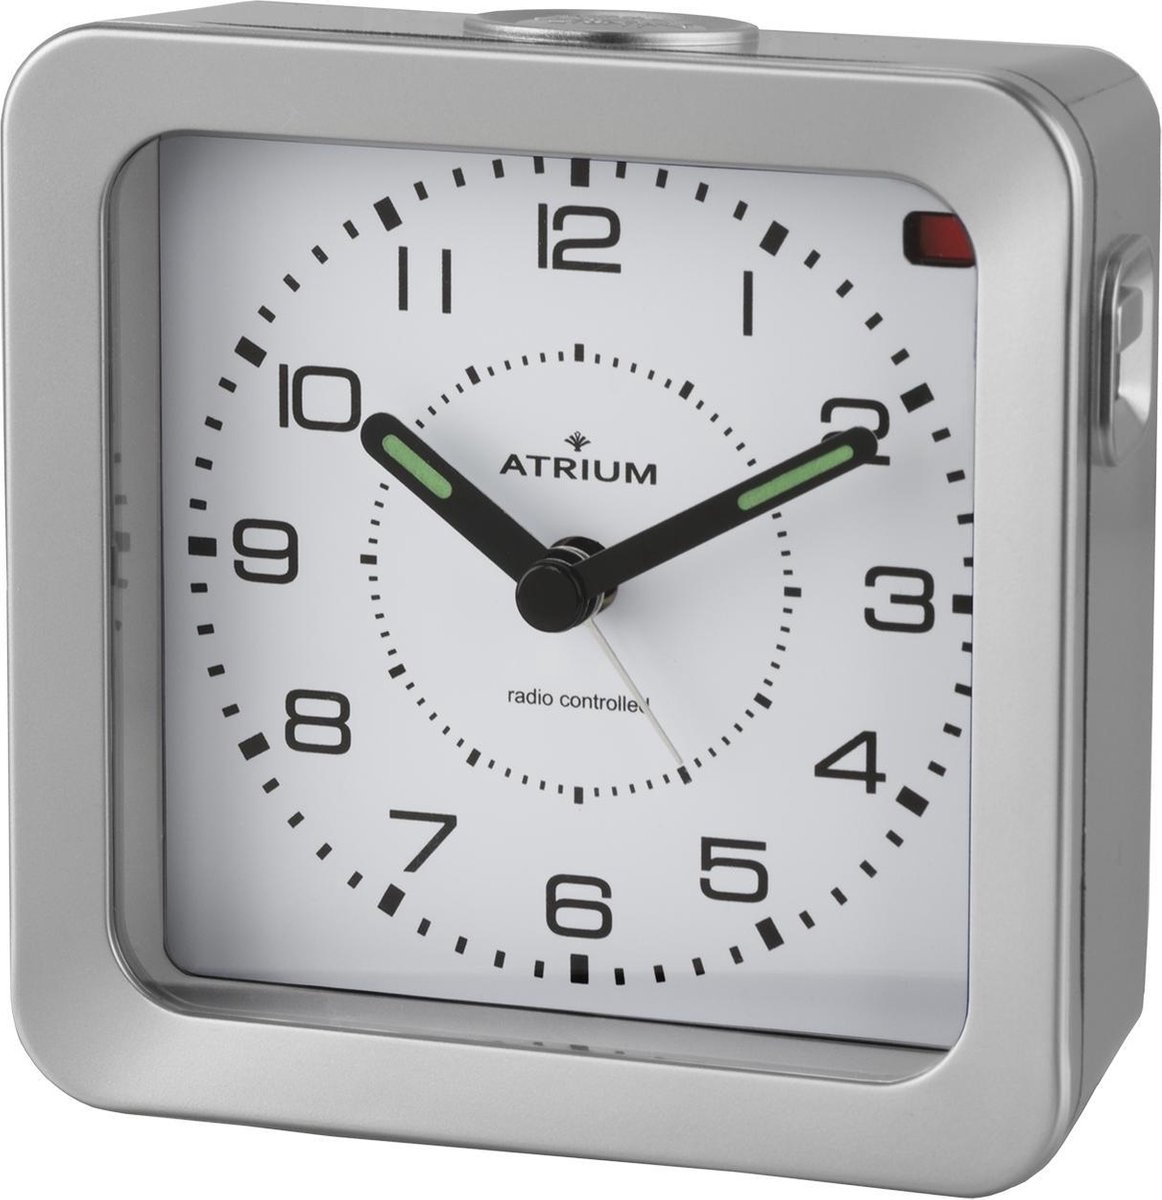 ATRIUM Wekker - Analoog - Radiogestuurd - Alarm - Zilver - Licht - Verlichte wijzers - Opbouwend Alarmsignaal - Snooze - Duidelijk - Quartz uurwerk - A660-19